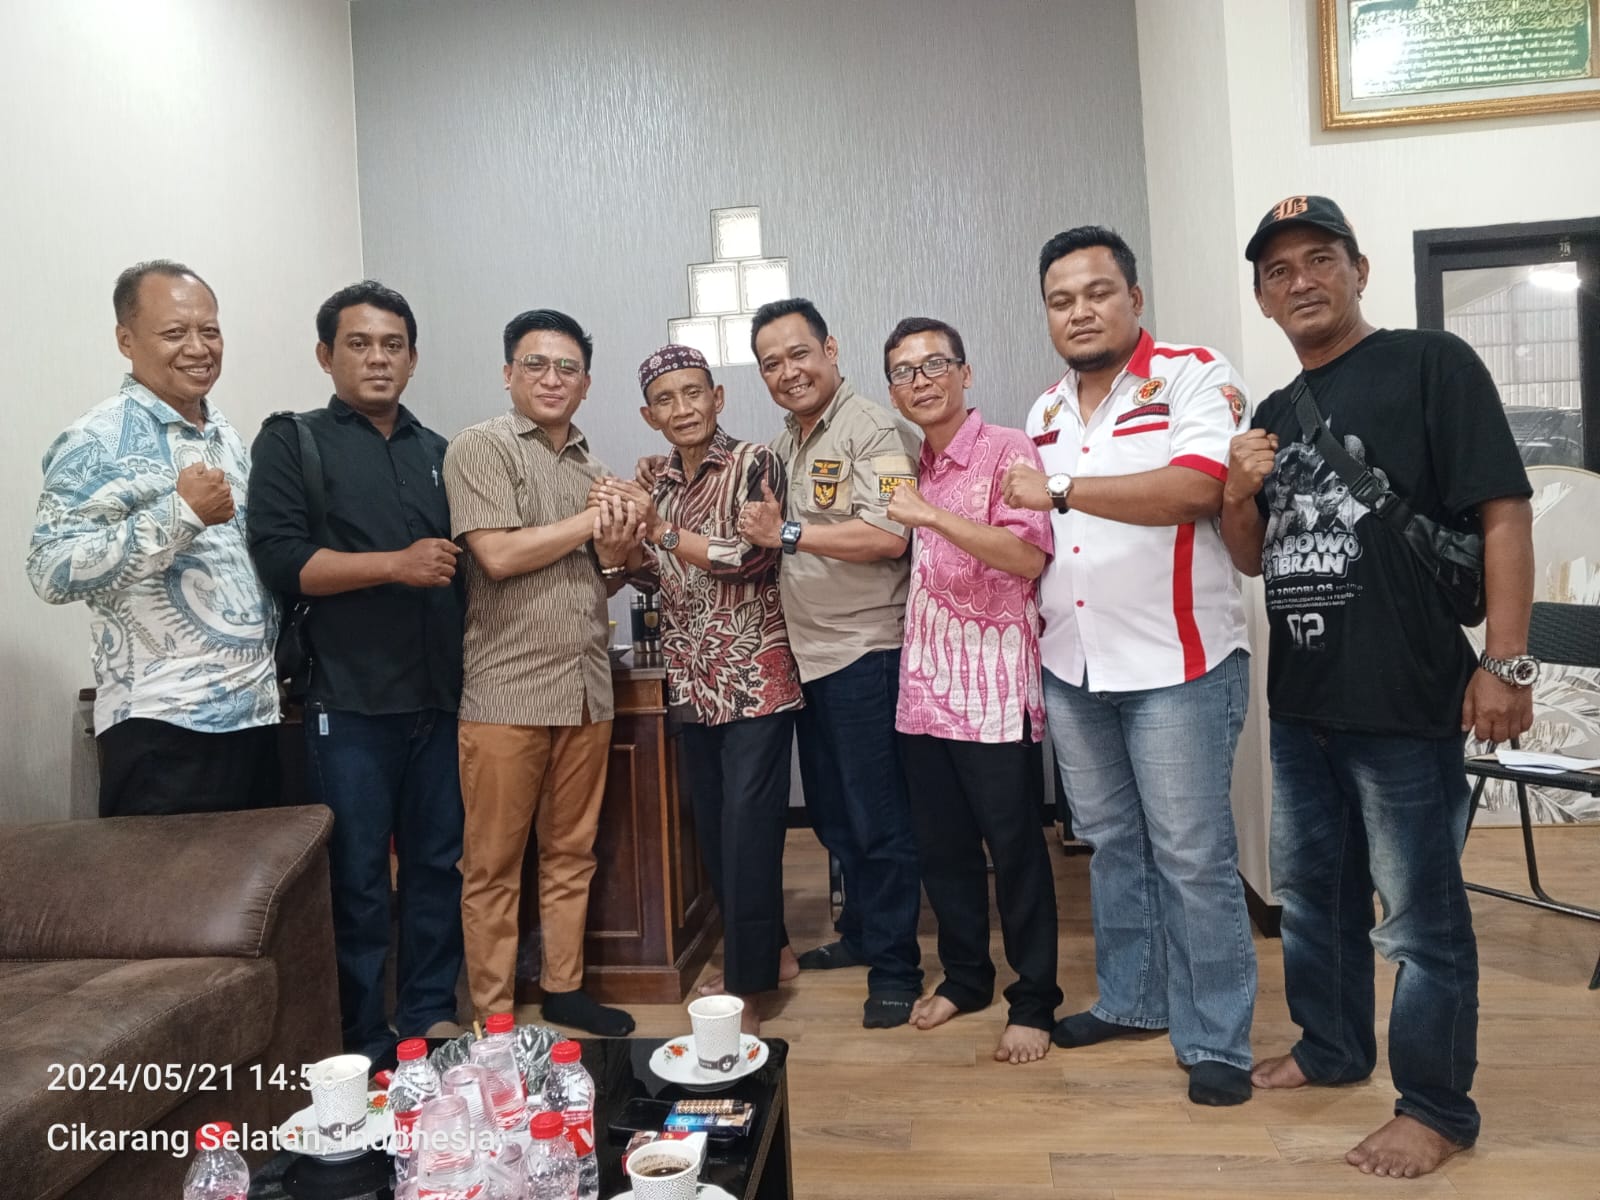 Hadirkan Pencerahan Kepemimpinan di Kabupaten Bekasi, Diskusi Publik Bersama Tokoh Nasional Siap Digelar TKN Merah Putih Bersama AWIBB